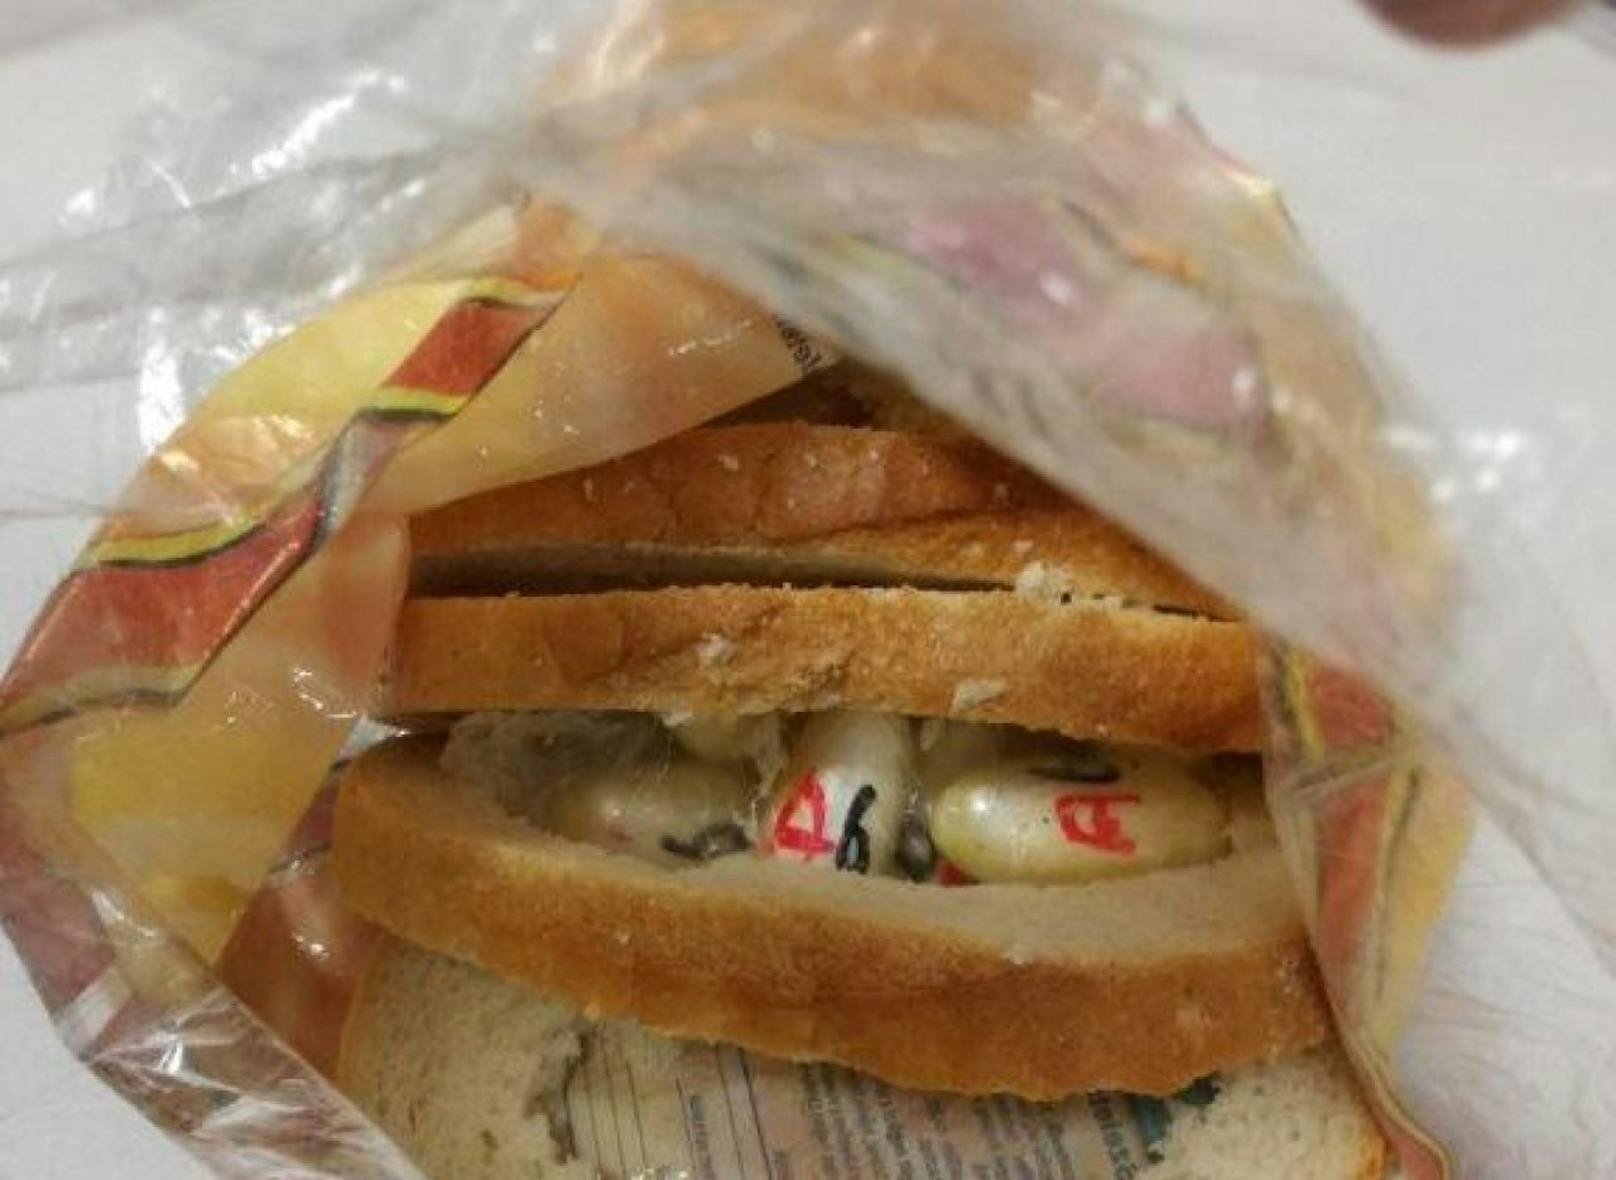 Kurier bastelte sich ein Drogen-Sandwich.